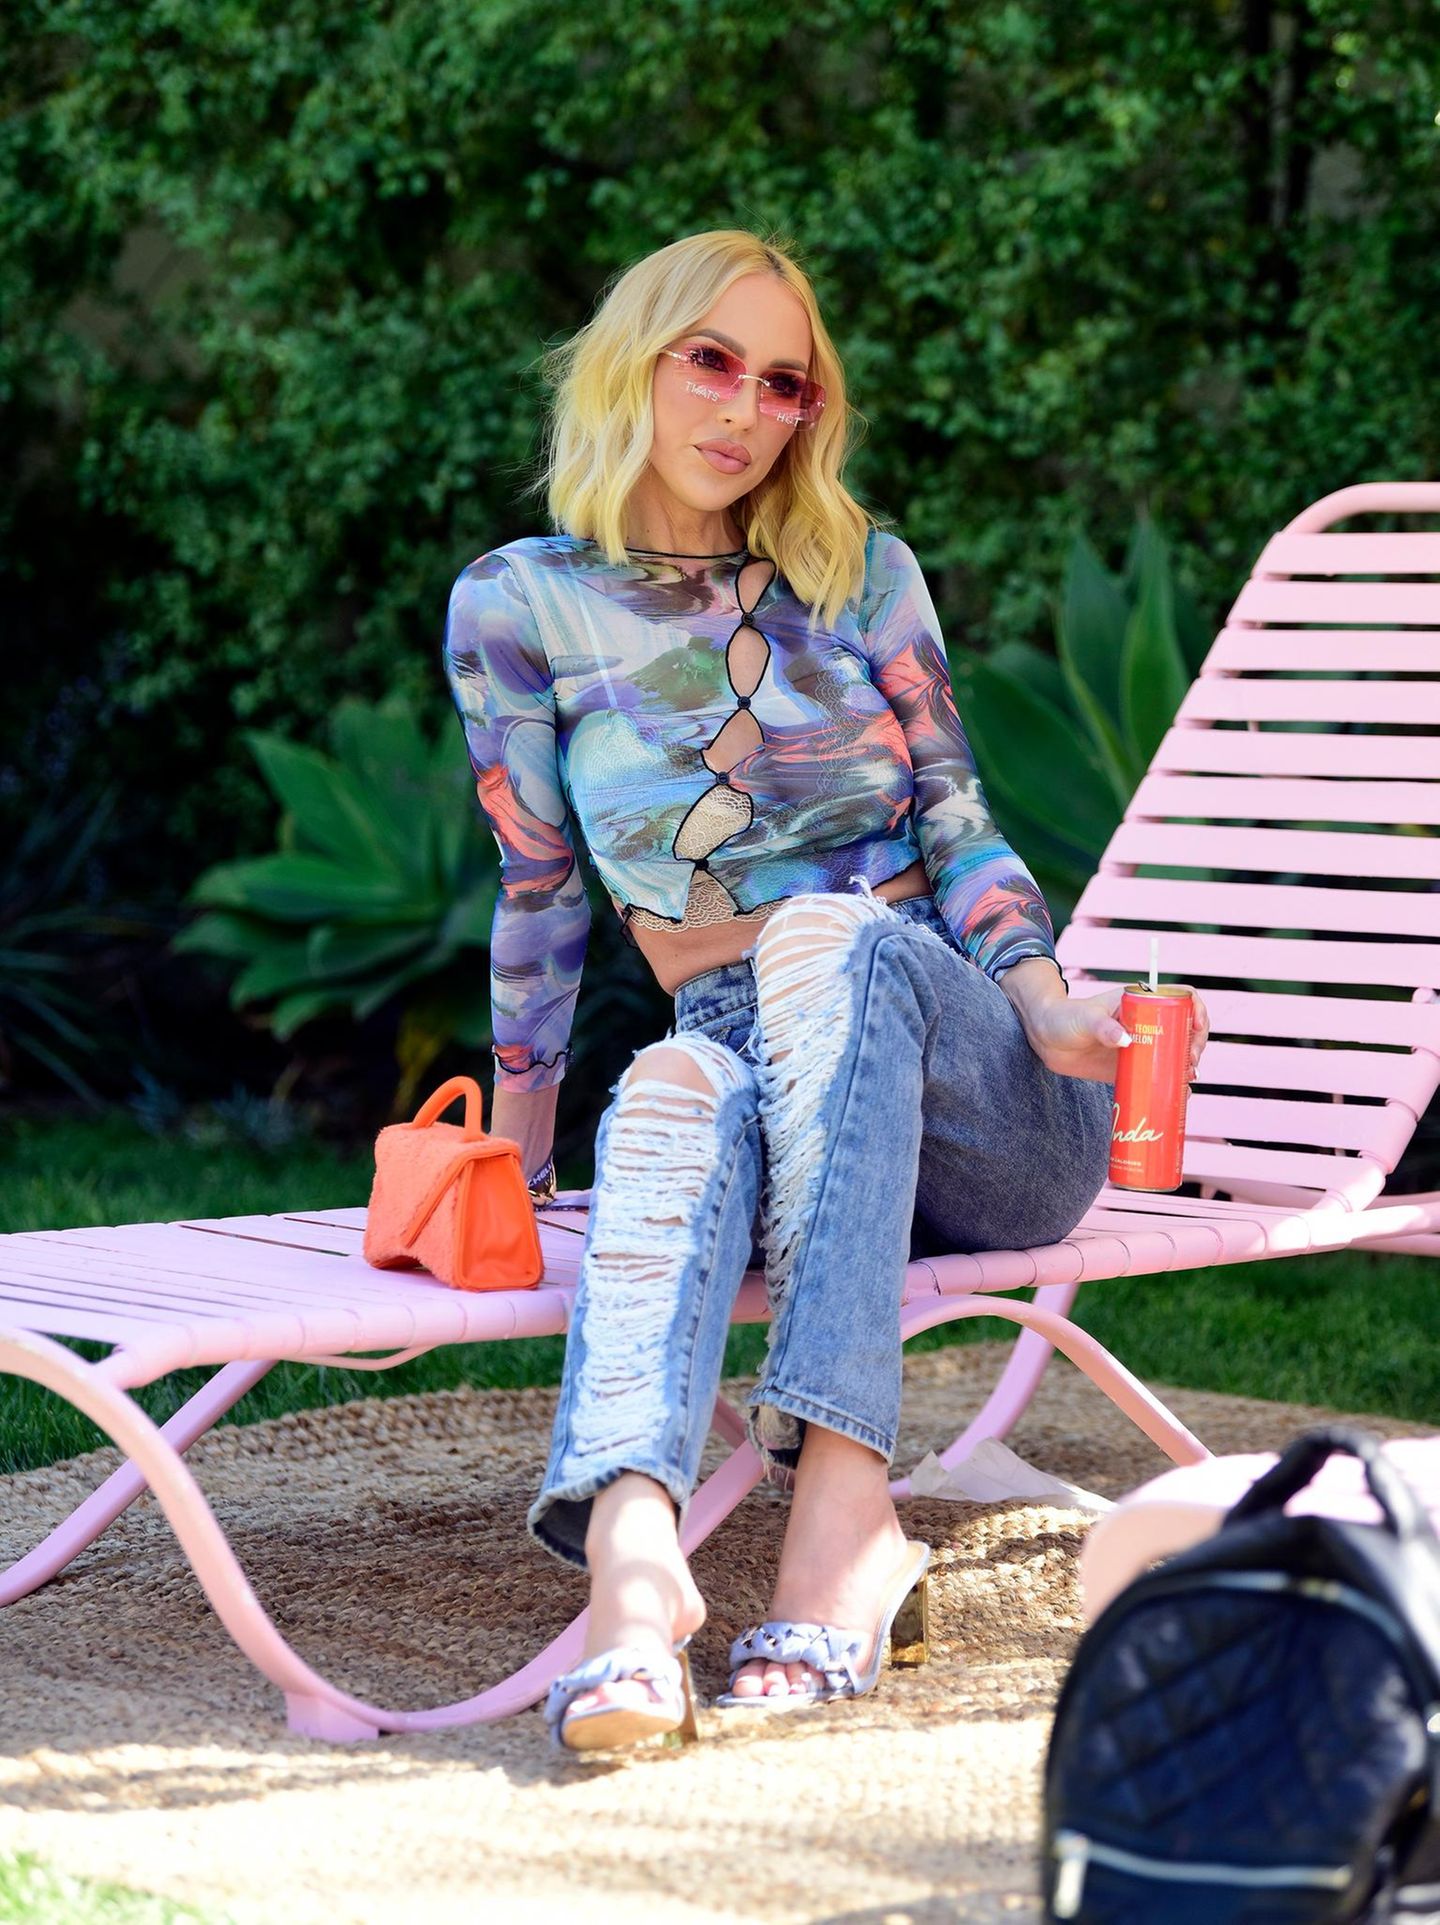 Auch Netflix-Star Christine Quinn wärmt sich mit einem Drink für das Wochenende auf. Dabei trägt sie eine lässige Jeans mit Destroyed-Look und ein halbtransparentes Shirt mit wildem Muster.